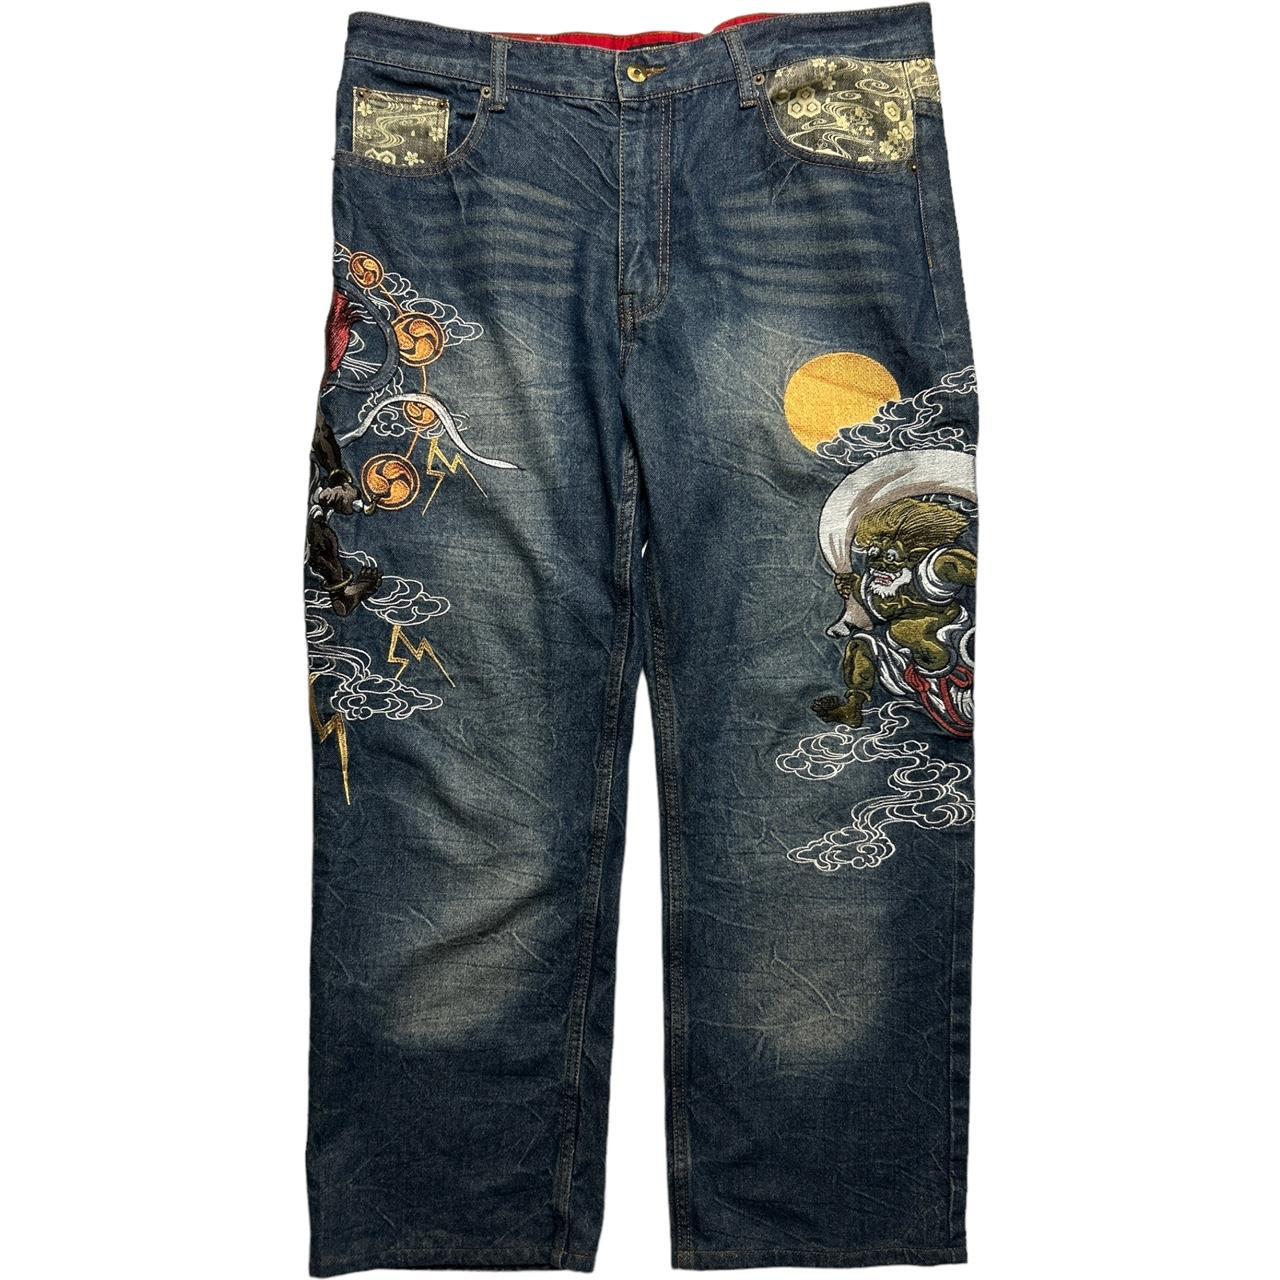 Japanese Denim Jeans (38")